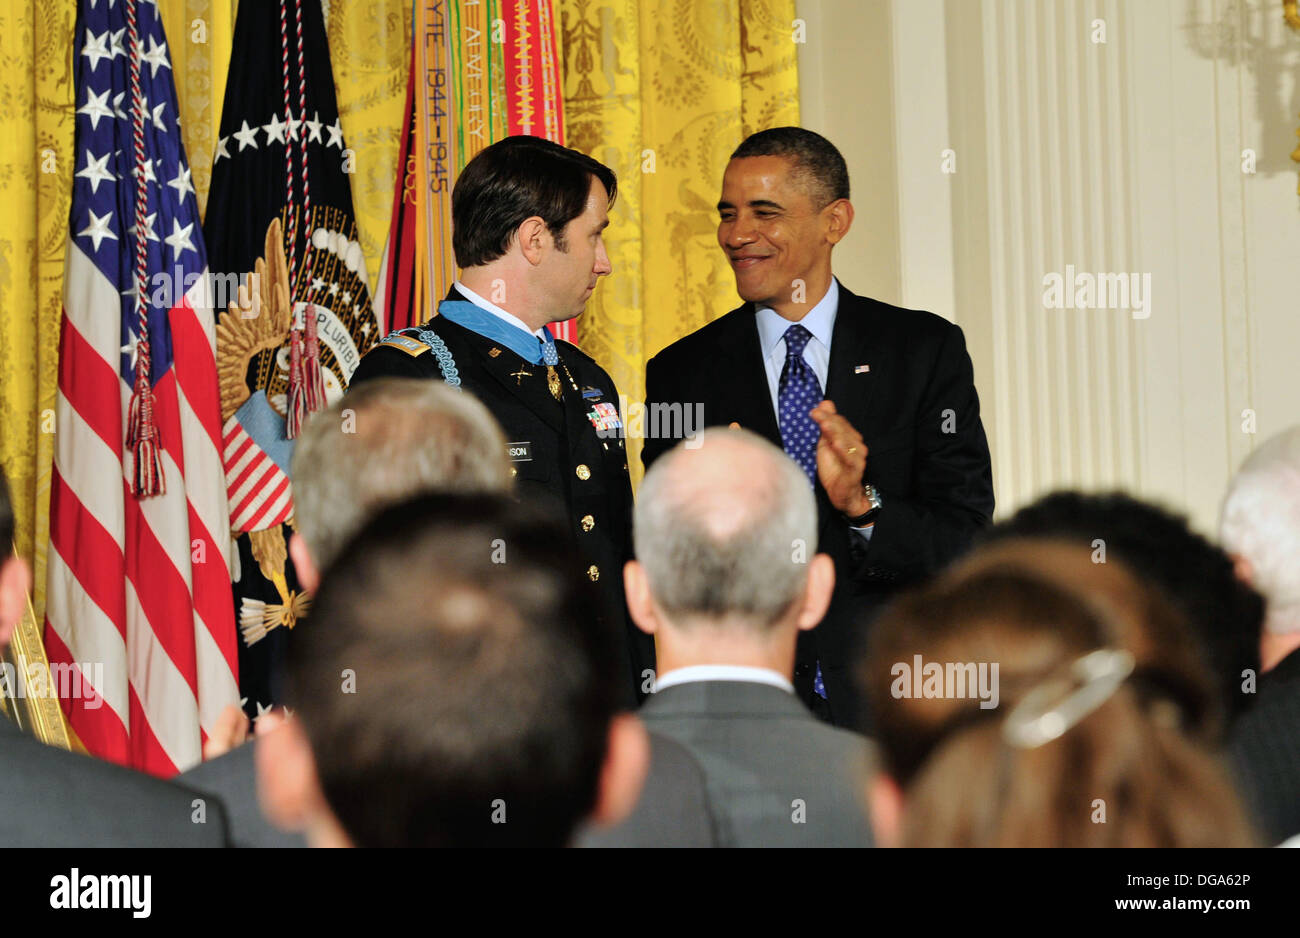 US-Präsident Barack Obama gratuliert ehemaligen US Army Captain William D. Swenson nach ihm mit der Medal Of Honor zu präsentieren, während einer Zeremonie im East Room des weißen Hauses 15. Oktober 2013 in Washington, DC. Die Medal Of Honor ist die höchste militärische Auszeichnung des Landes. Stockfoto